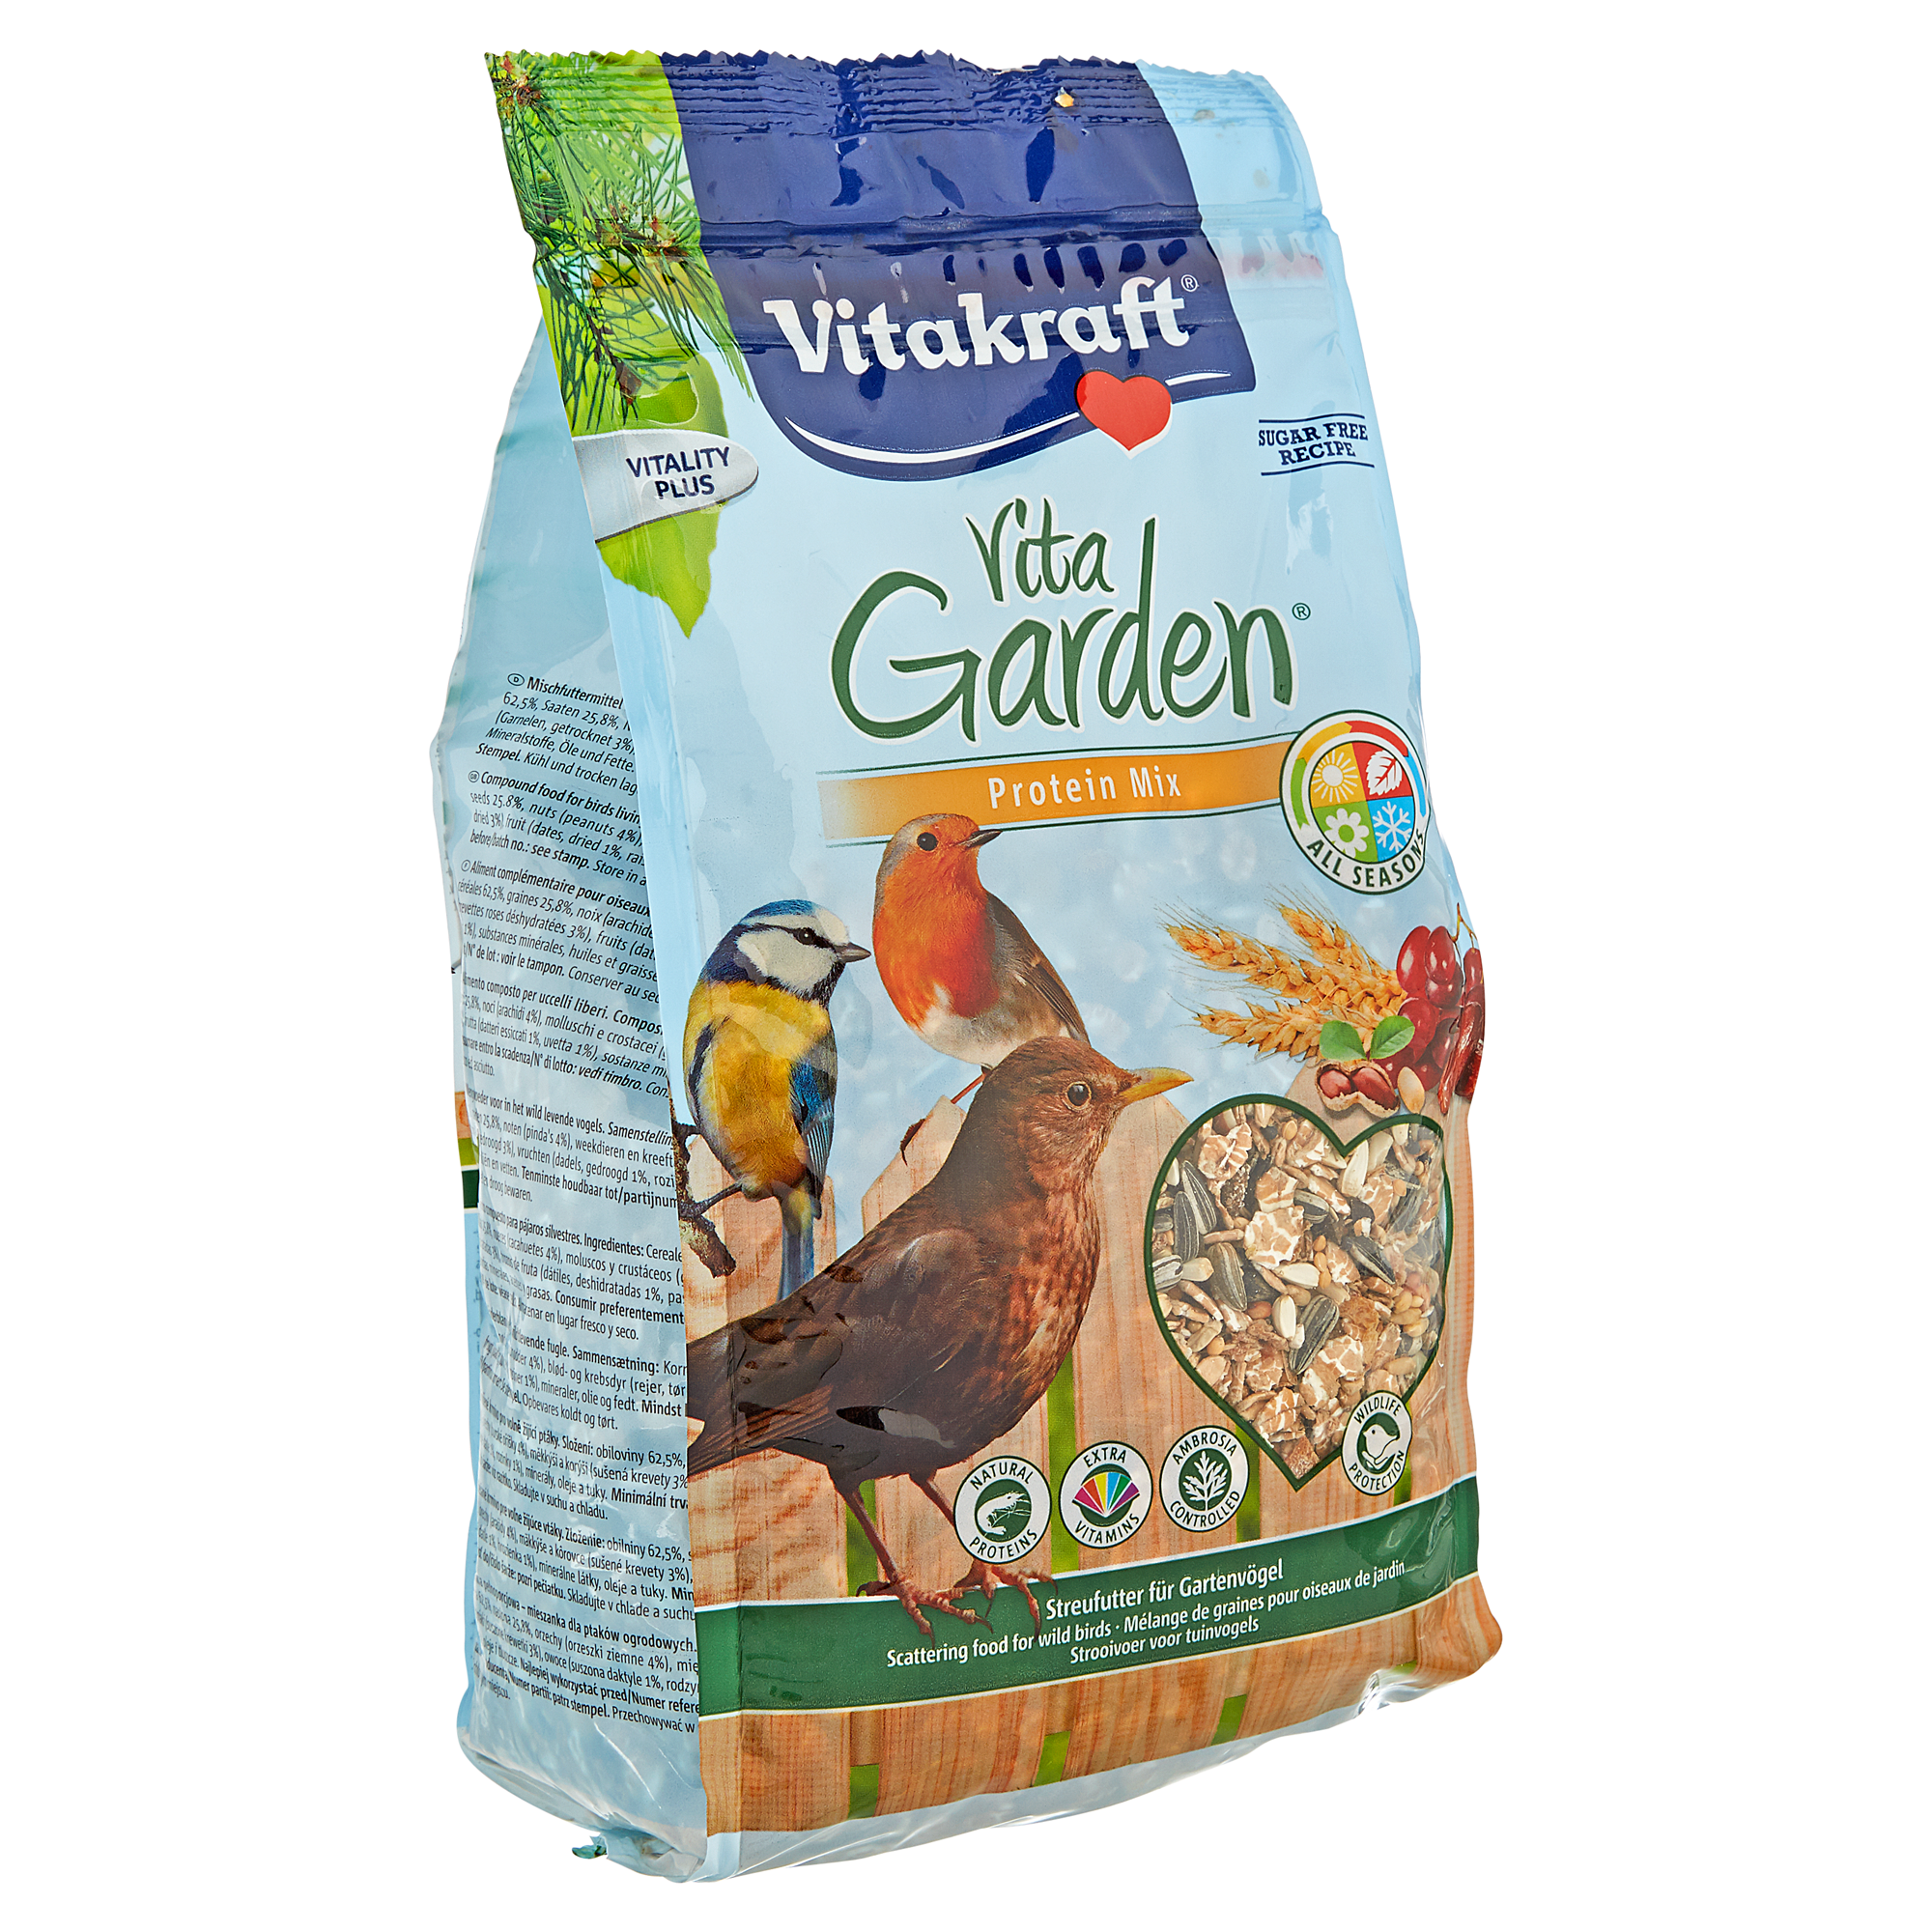 Vogelfutter "Vita Garden" Protein Mix 1 kg + product picture